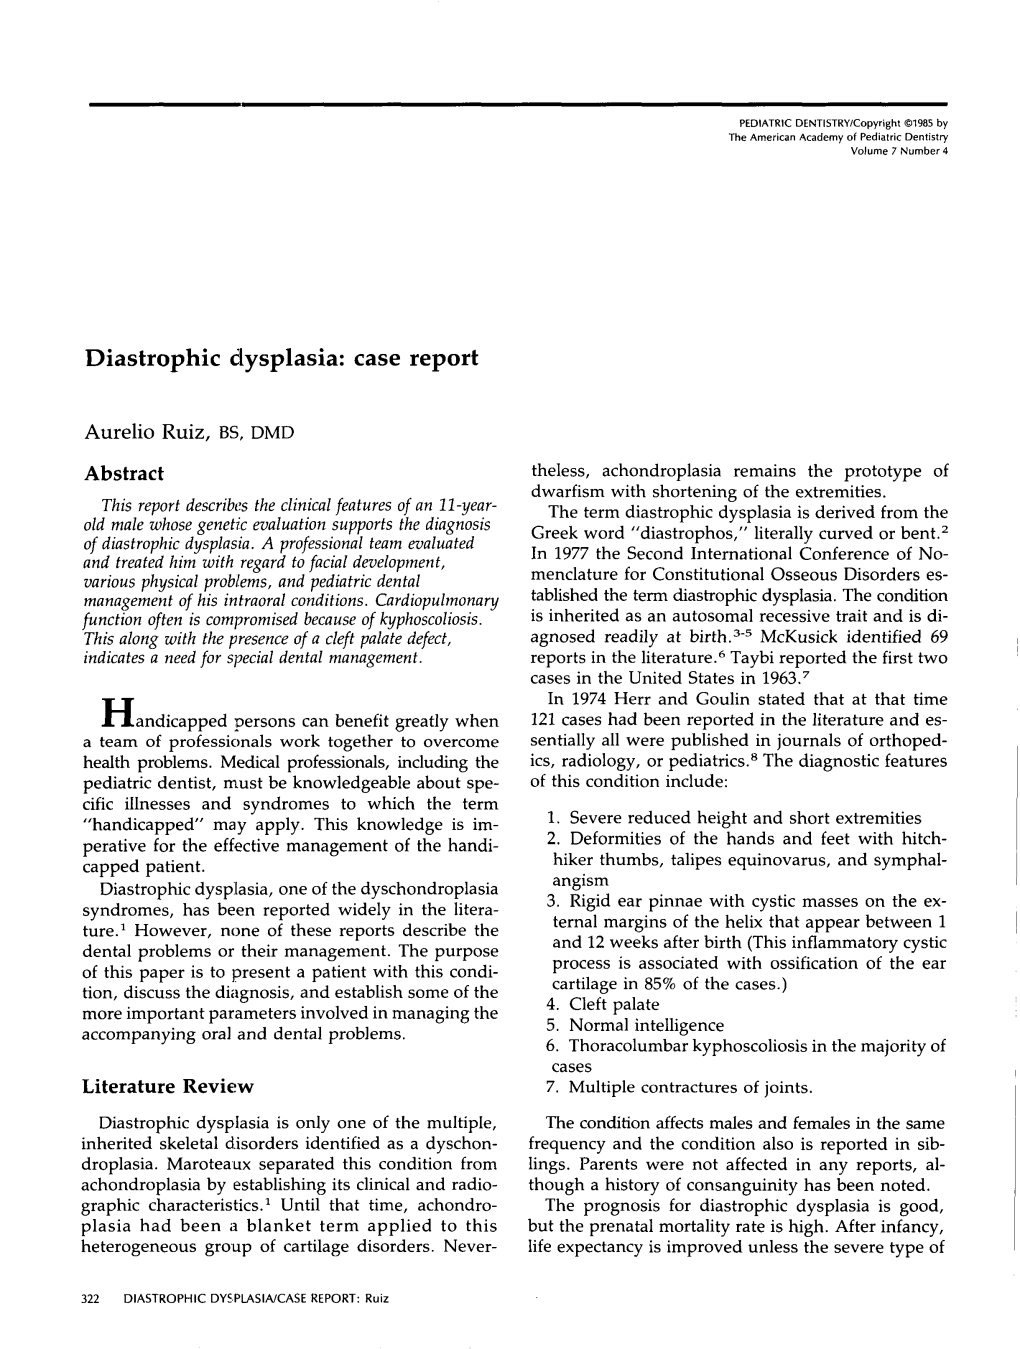 Diastrophic Dysplasia: Case Report